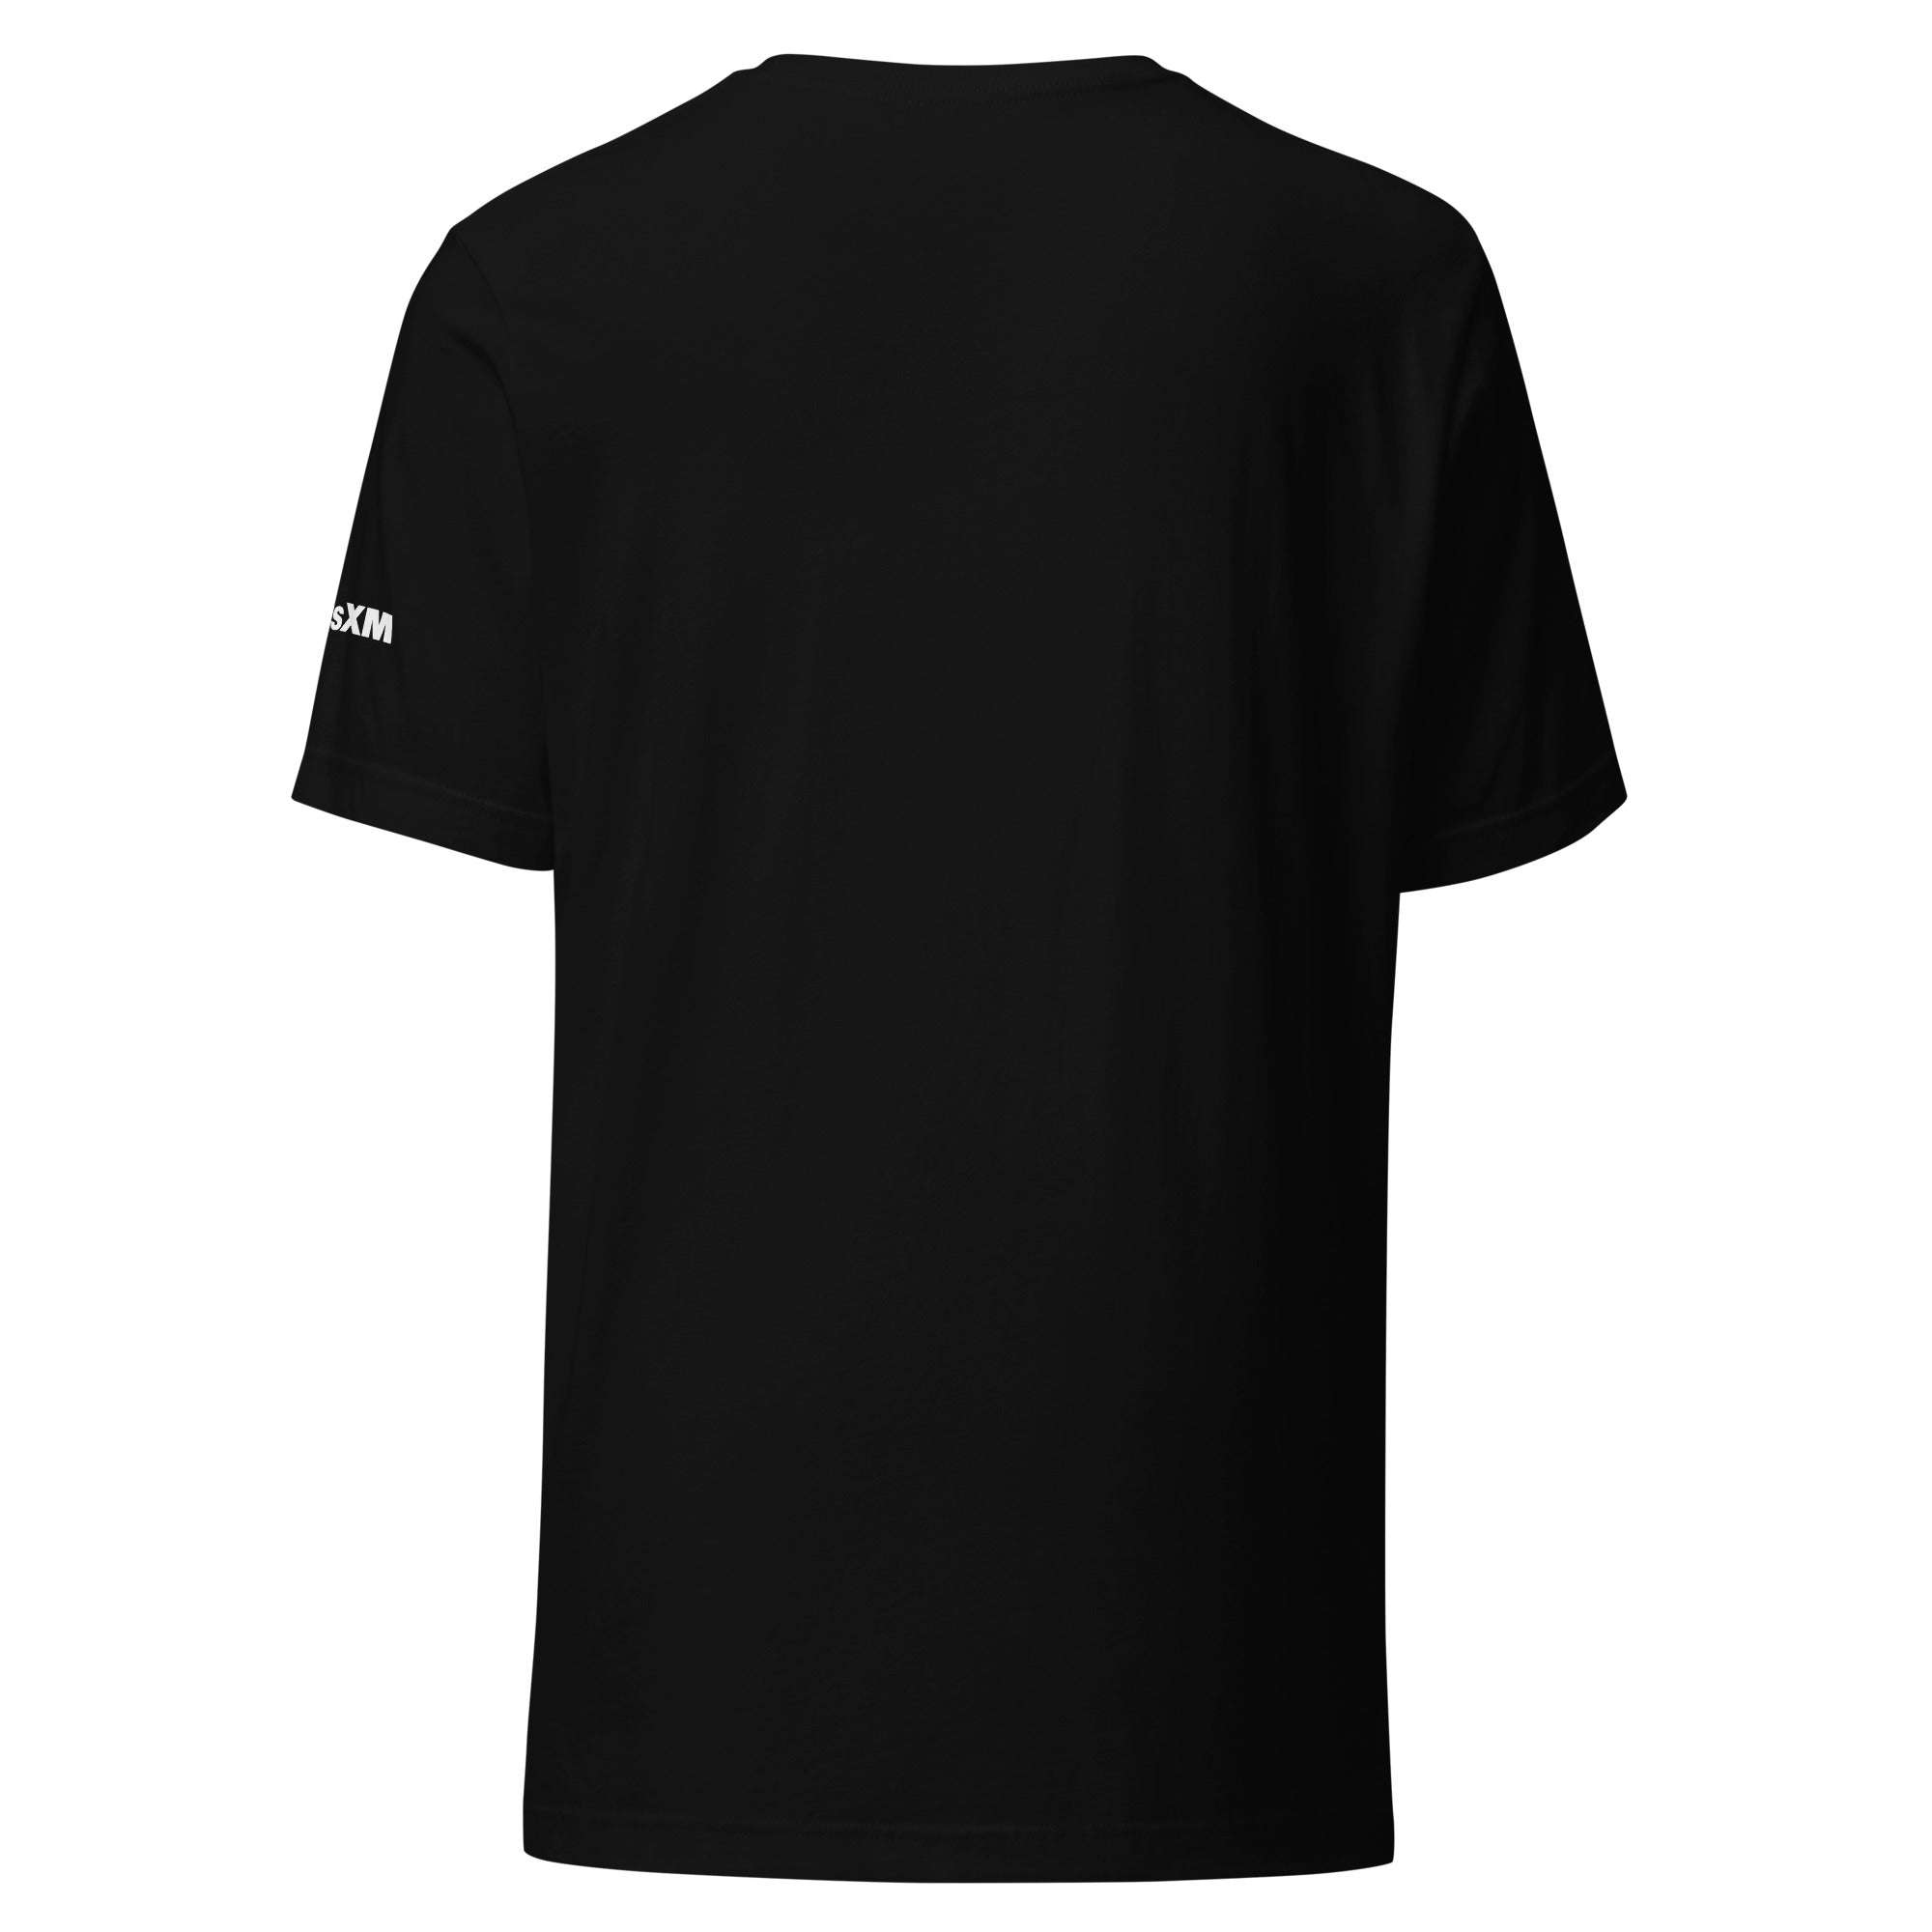 Pop Rocks: T-shirt (Black)